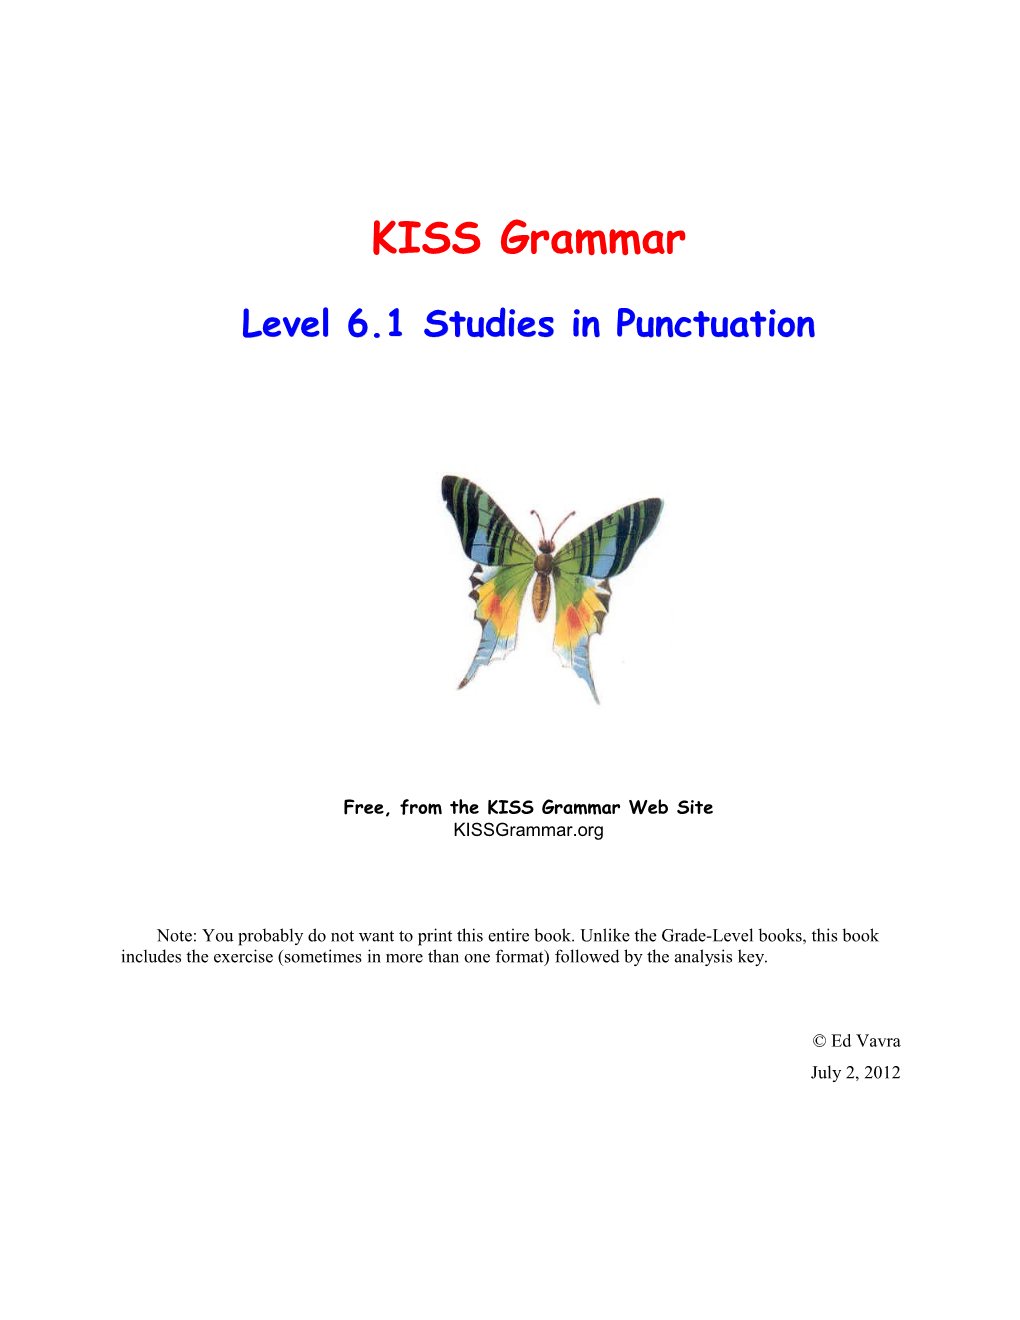 Level 6.1Studies in Punctuation